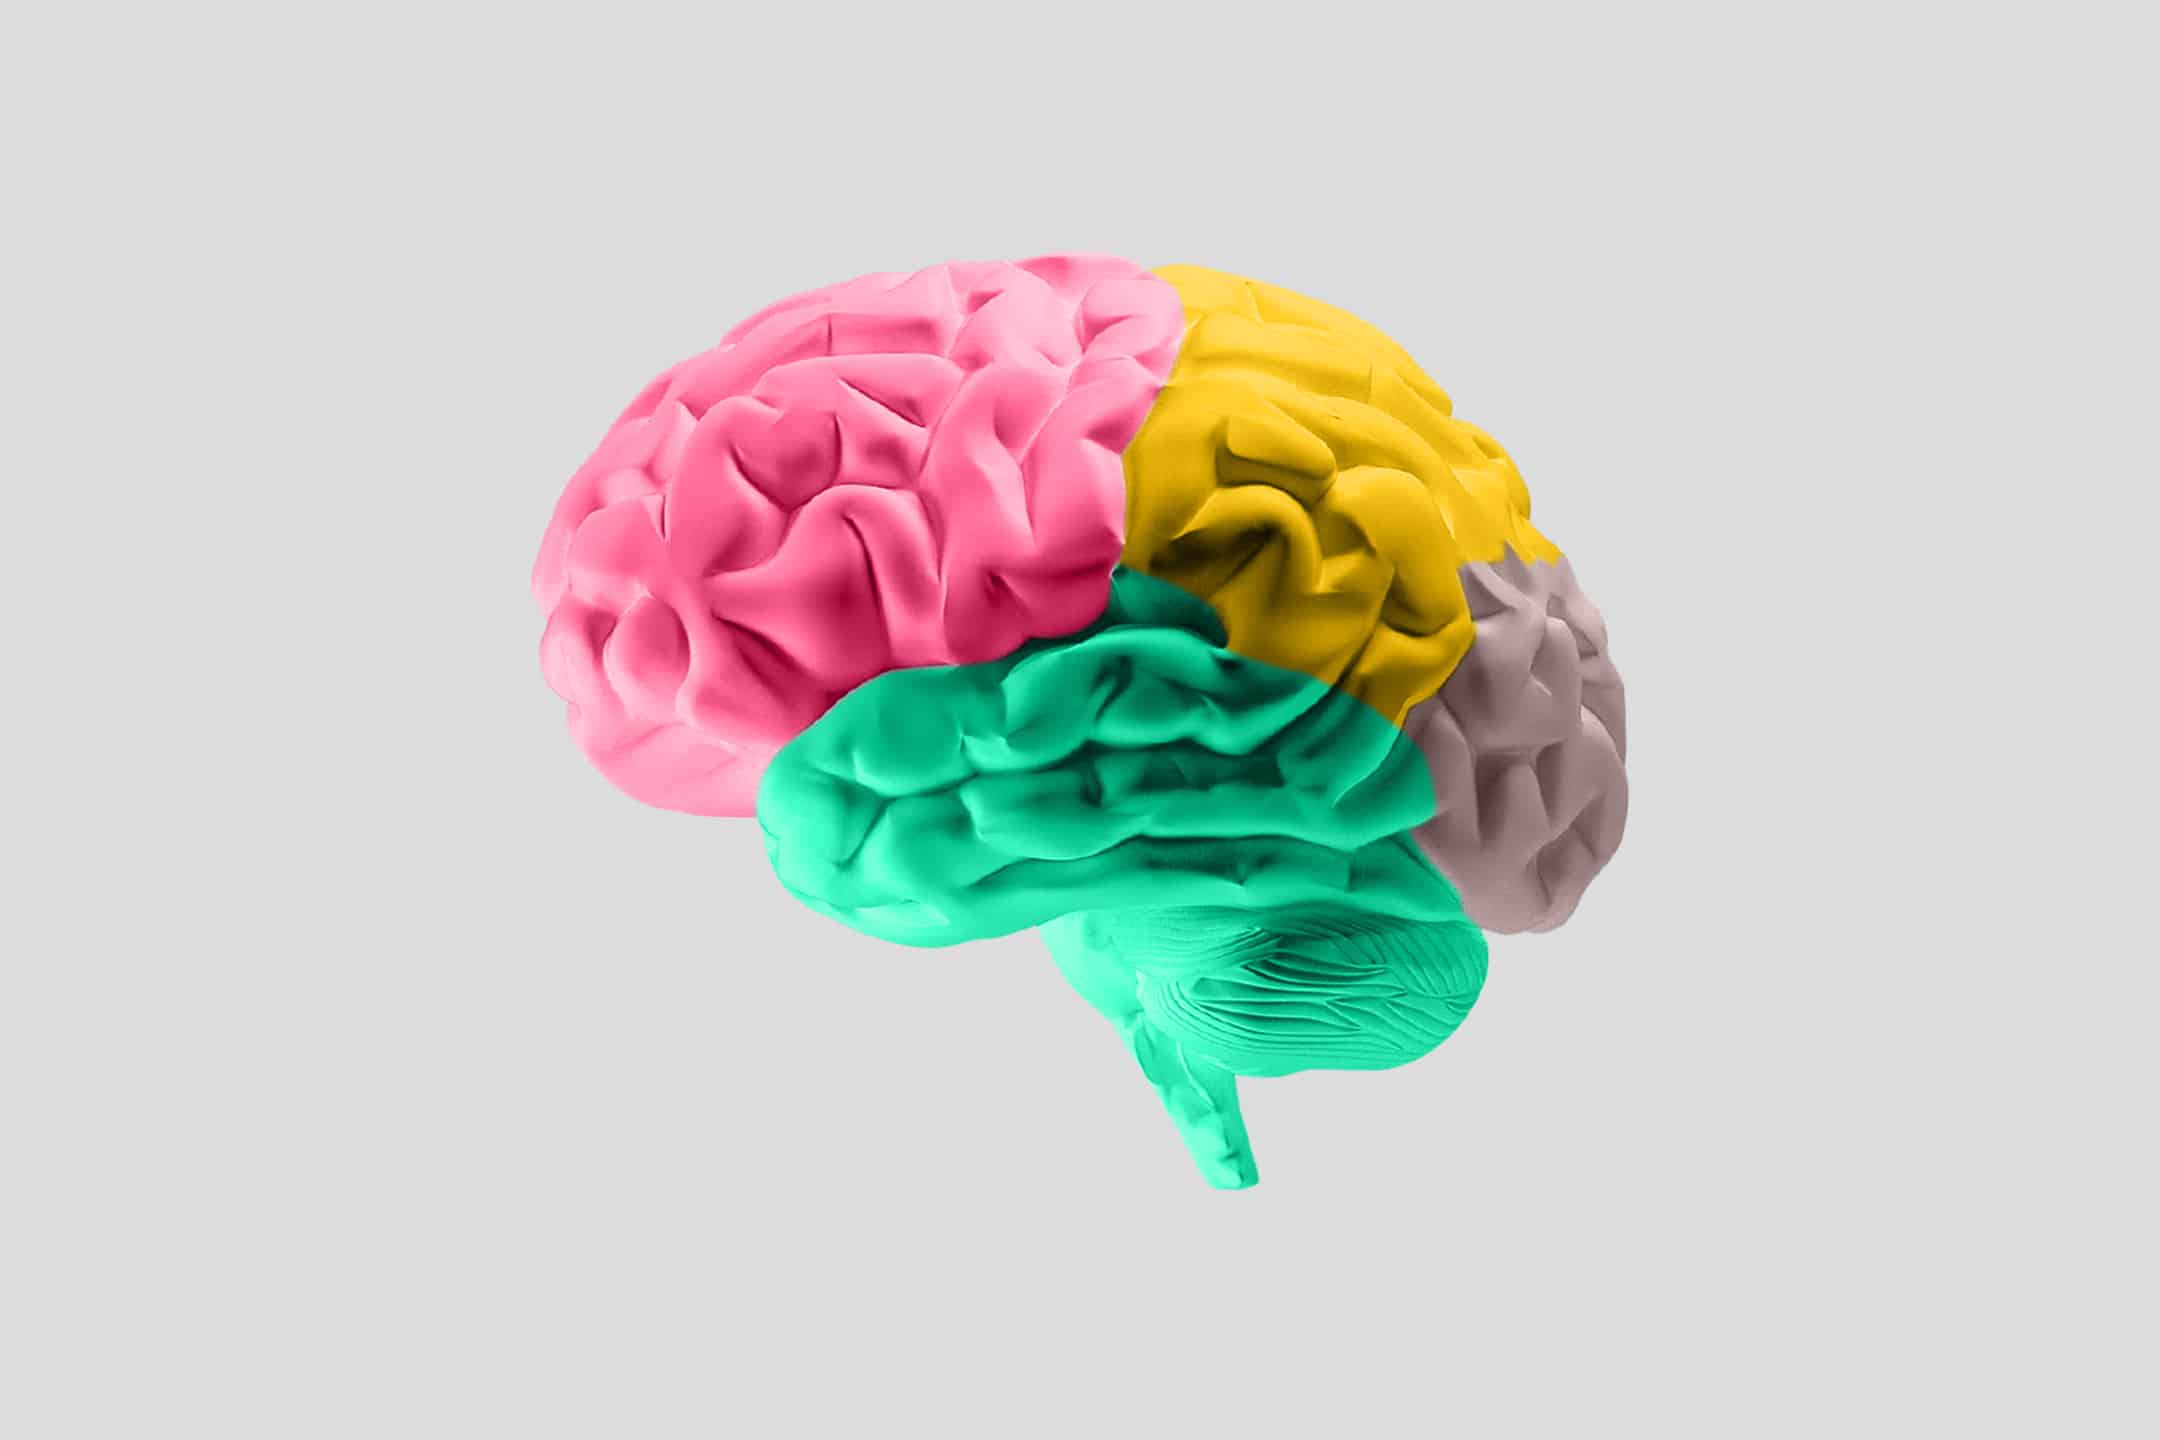 Illustration av en hjärna